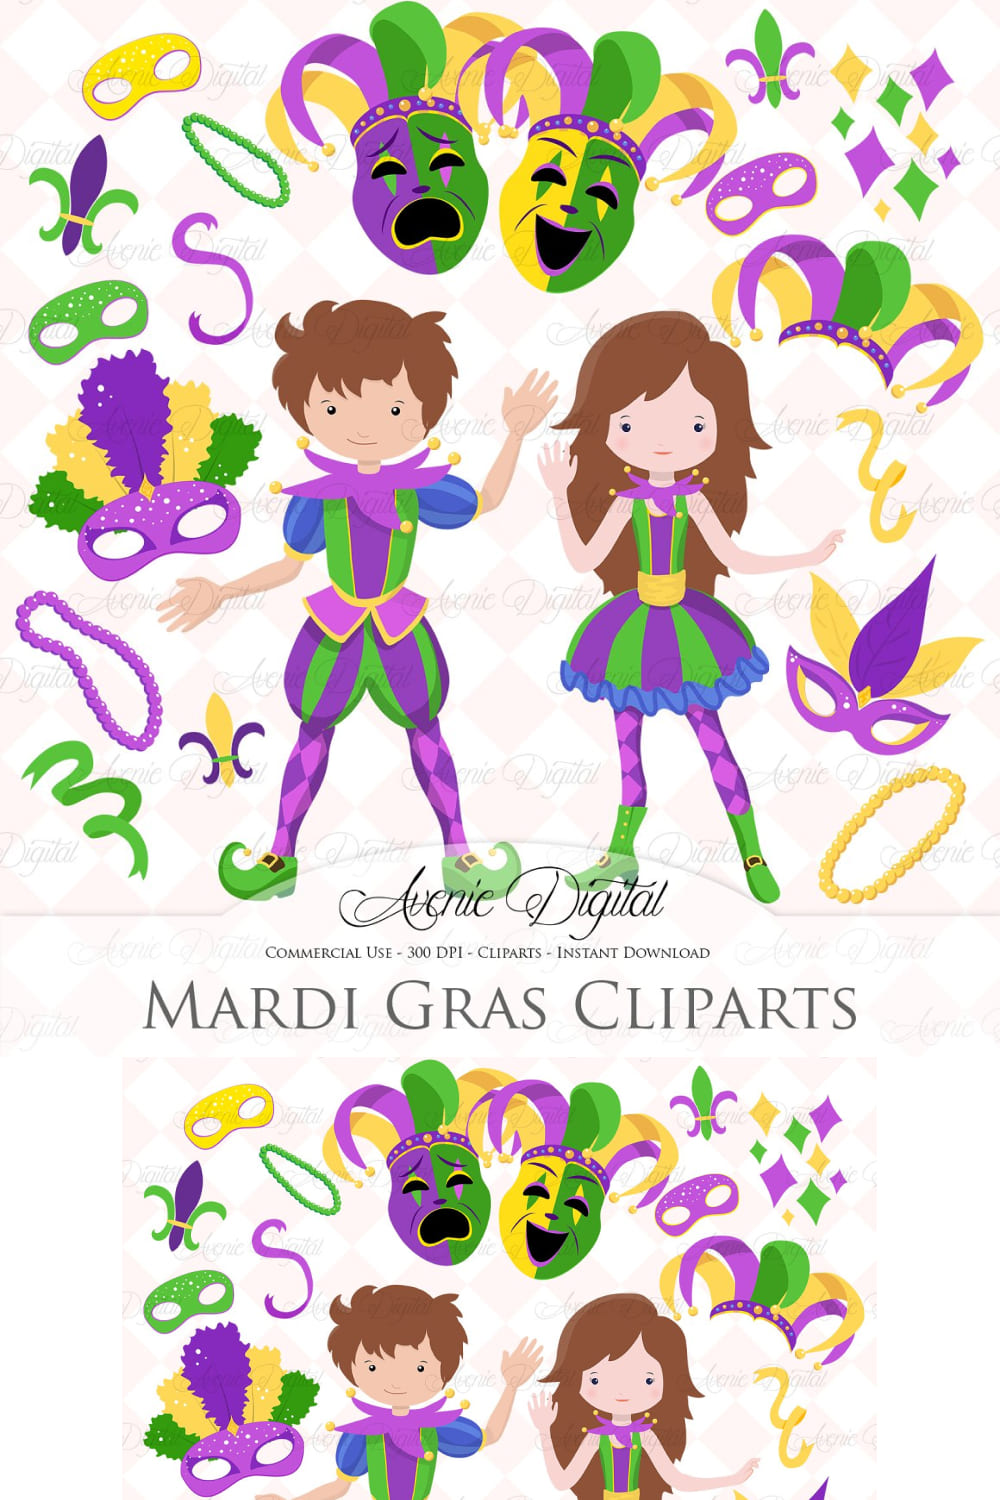 Mardi Gras Clipart - Pinterest image preview.